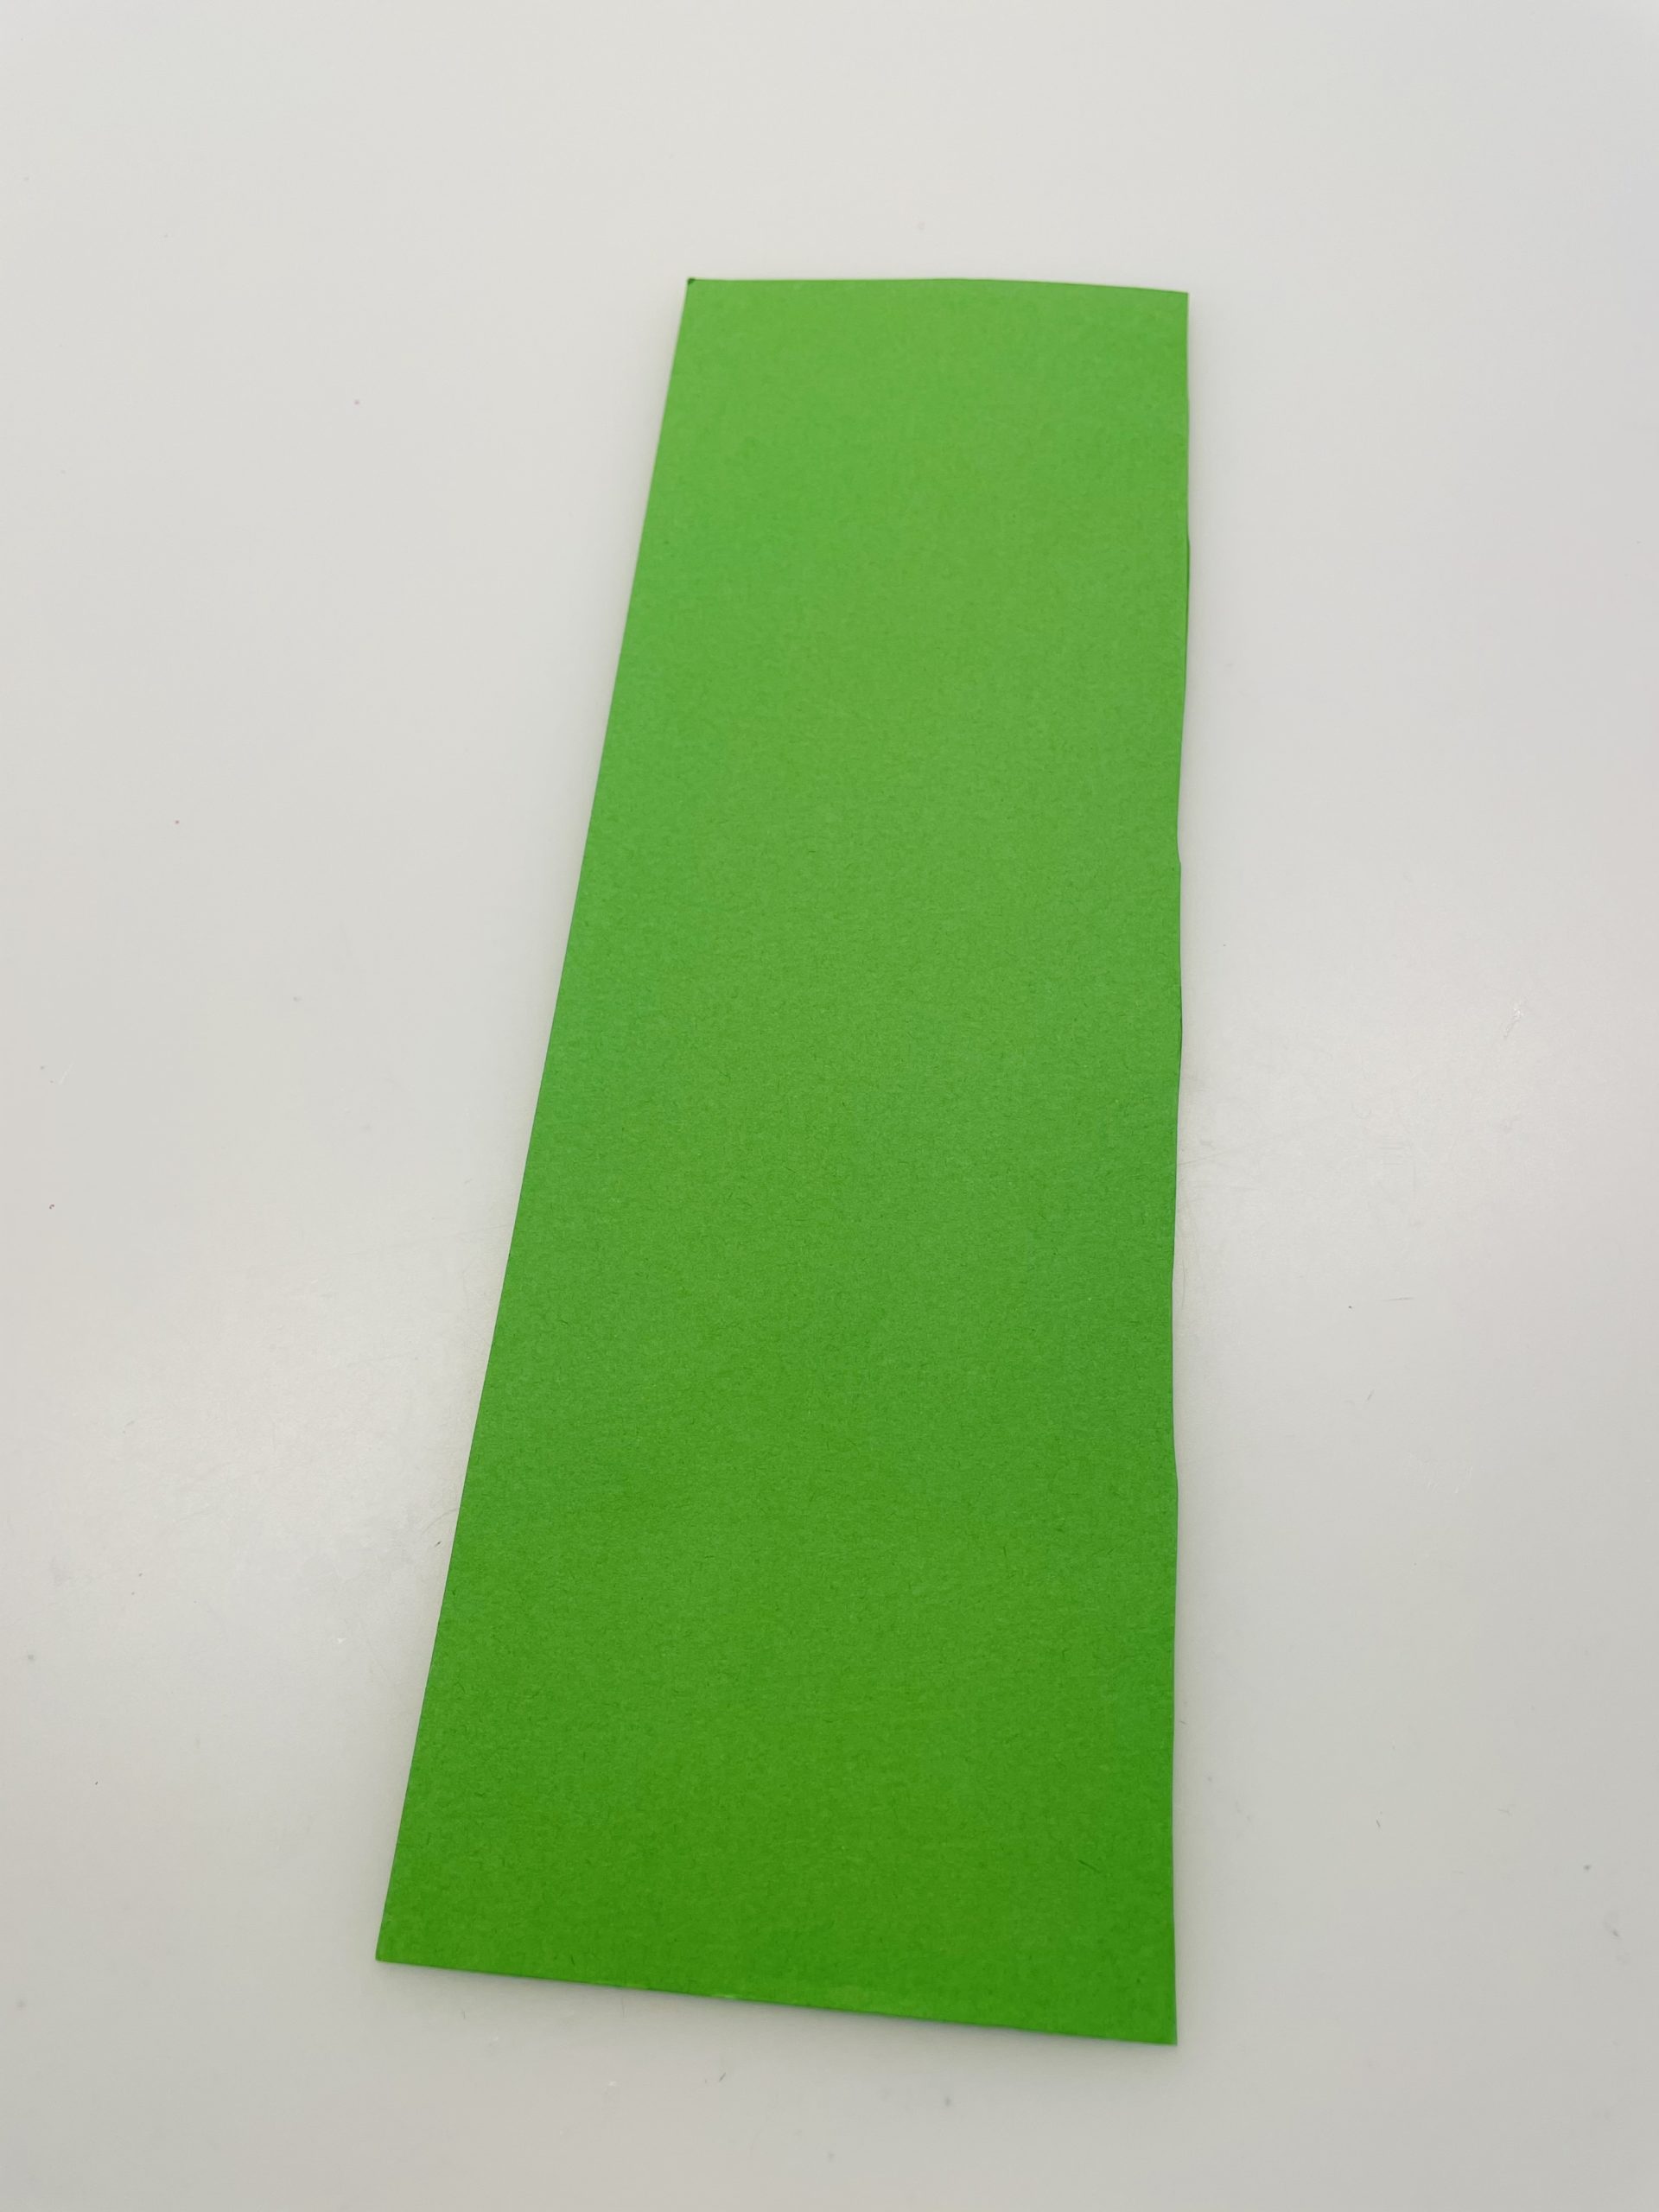 Bild zum Schritt 10 für das Bastel- und DIY-Abenteuer für Kinder: 'Schneidet jetzt einen Streifen grünes Papier auf die Maße 5cm...'